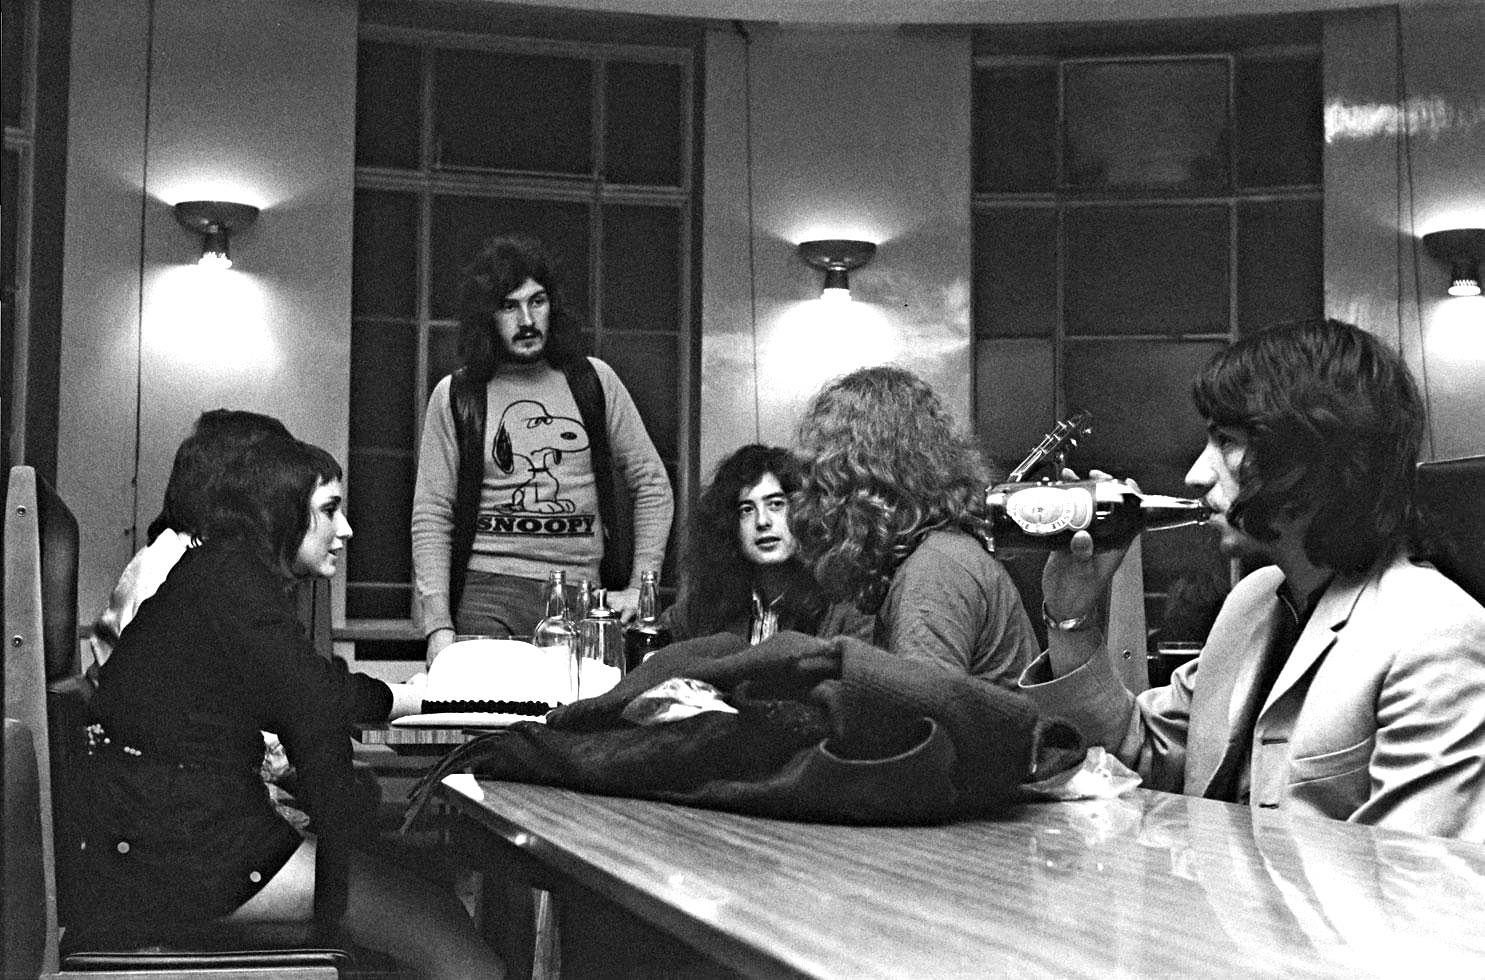 John Rettie Black and White Photograph - Led Zeppelin - Leeds - 1970